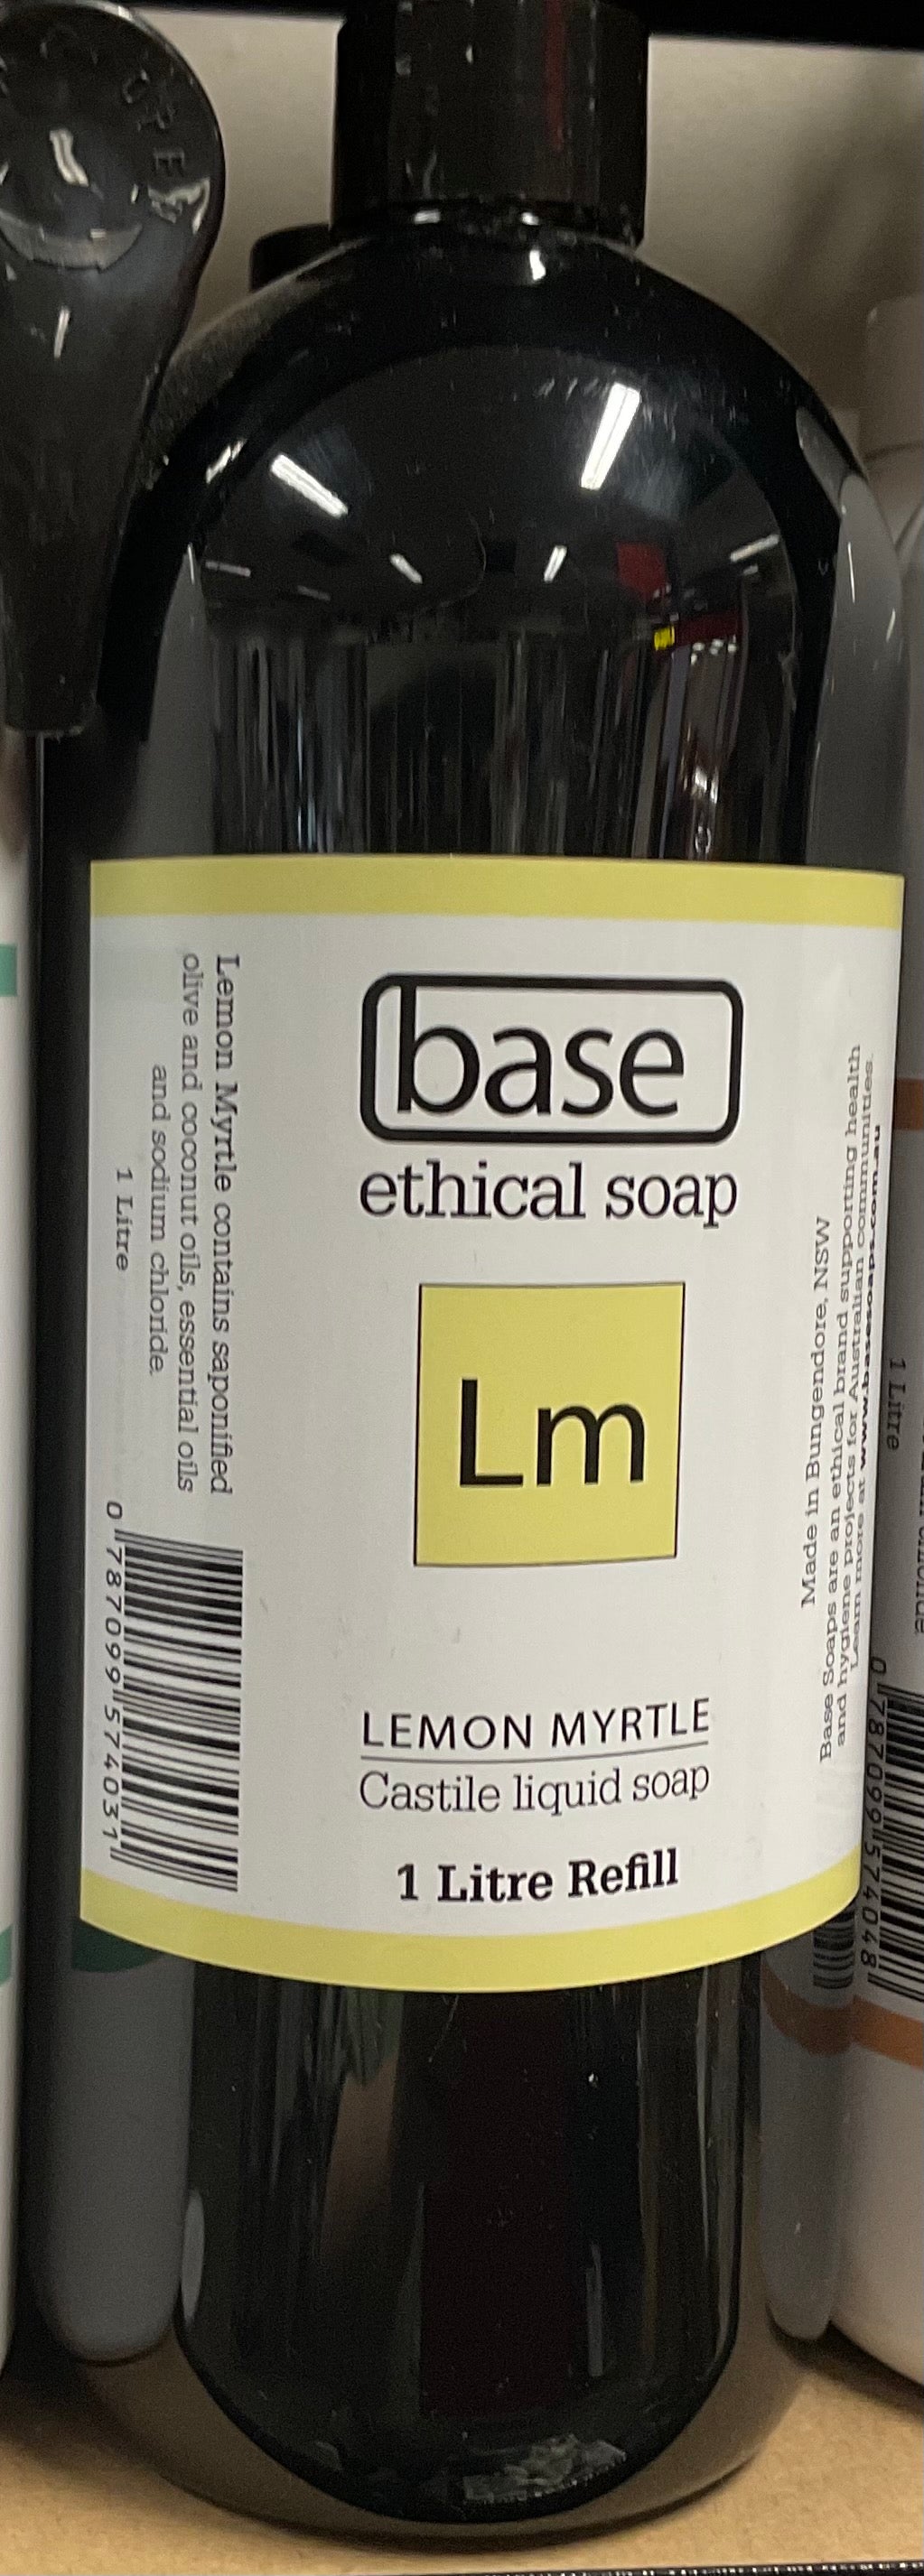 Lemon Myrtle Liquid Soap